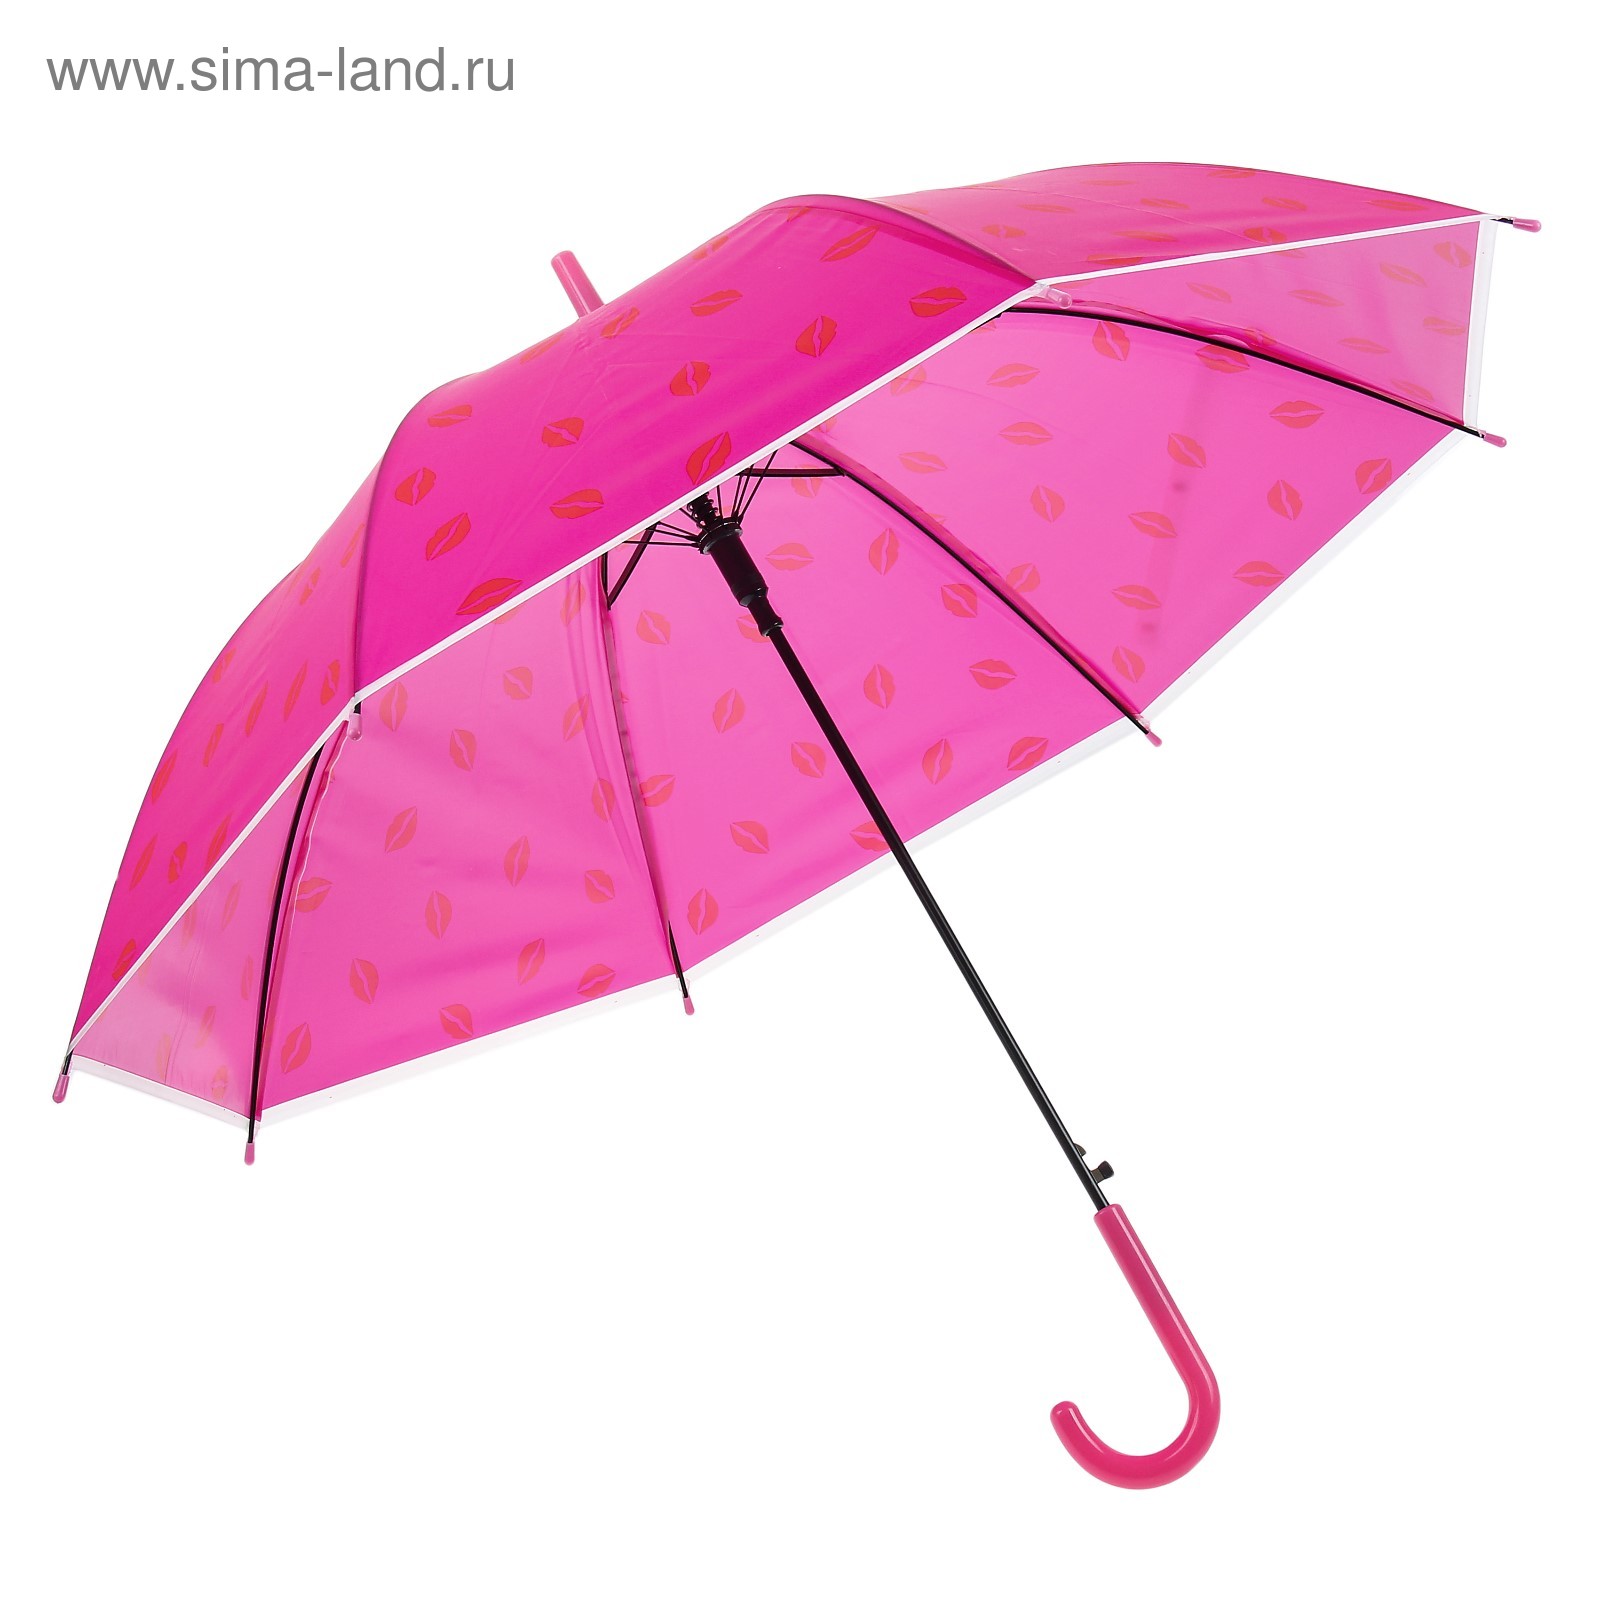 Зонтик надо. Детские зонты. Зонтик для детей. Девочка с зонтиком. Малыш с зонтиком.